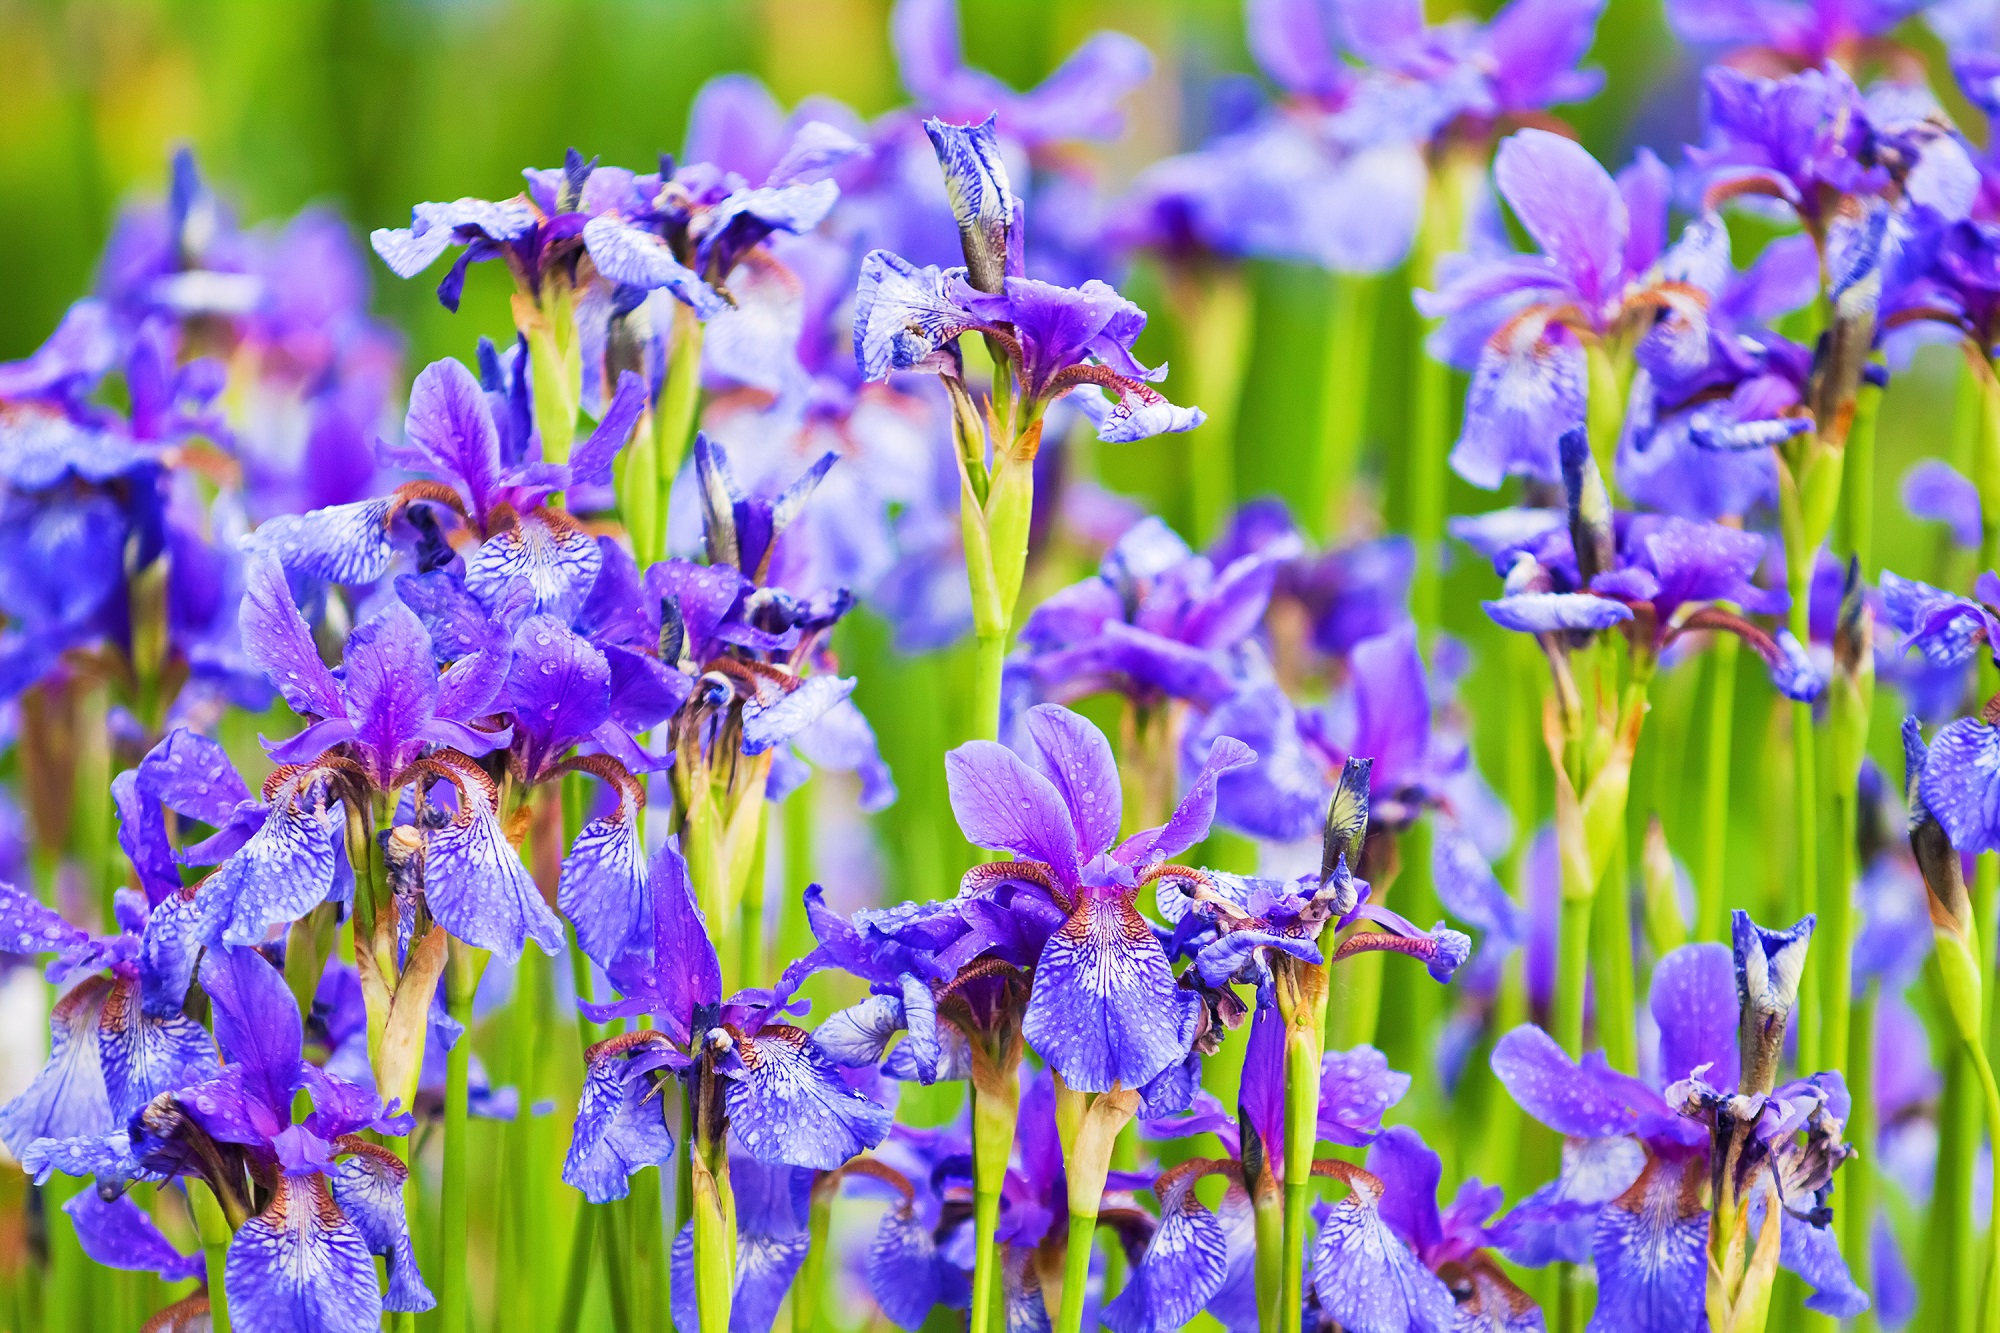 Pop in iris bulbs for spring colour (Squire's Garden Centres/PA)